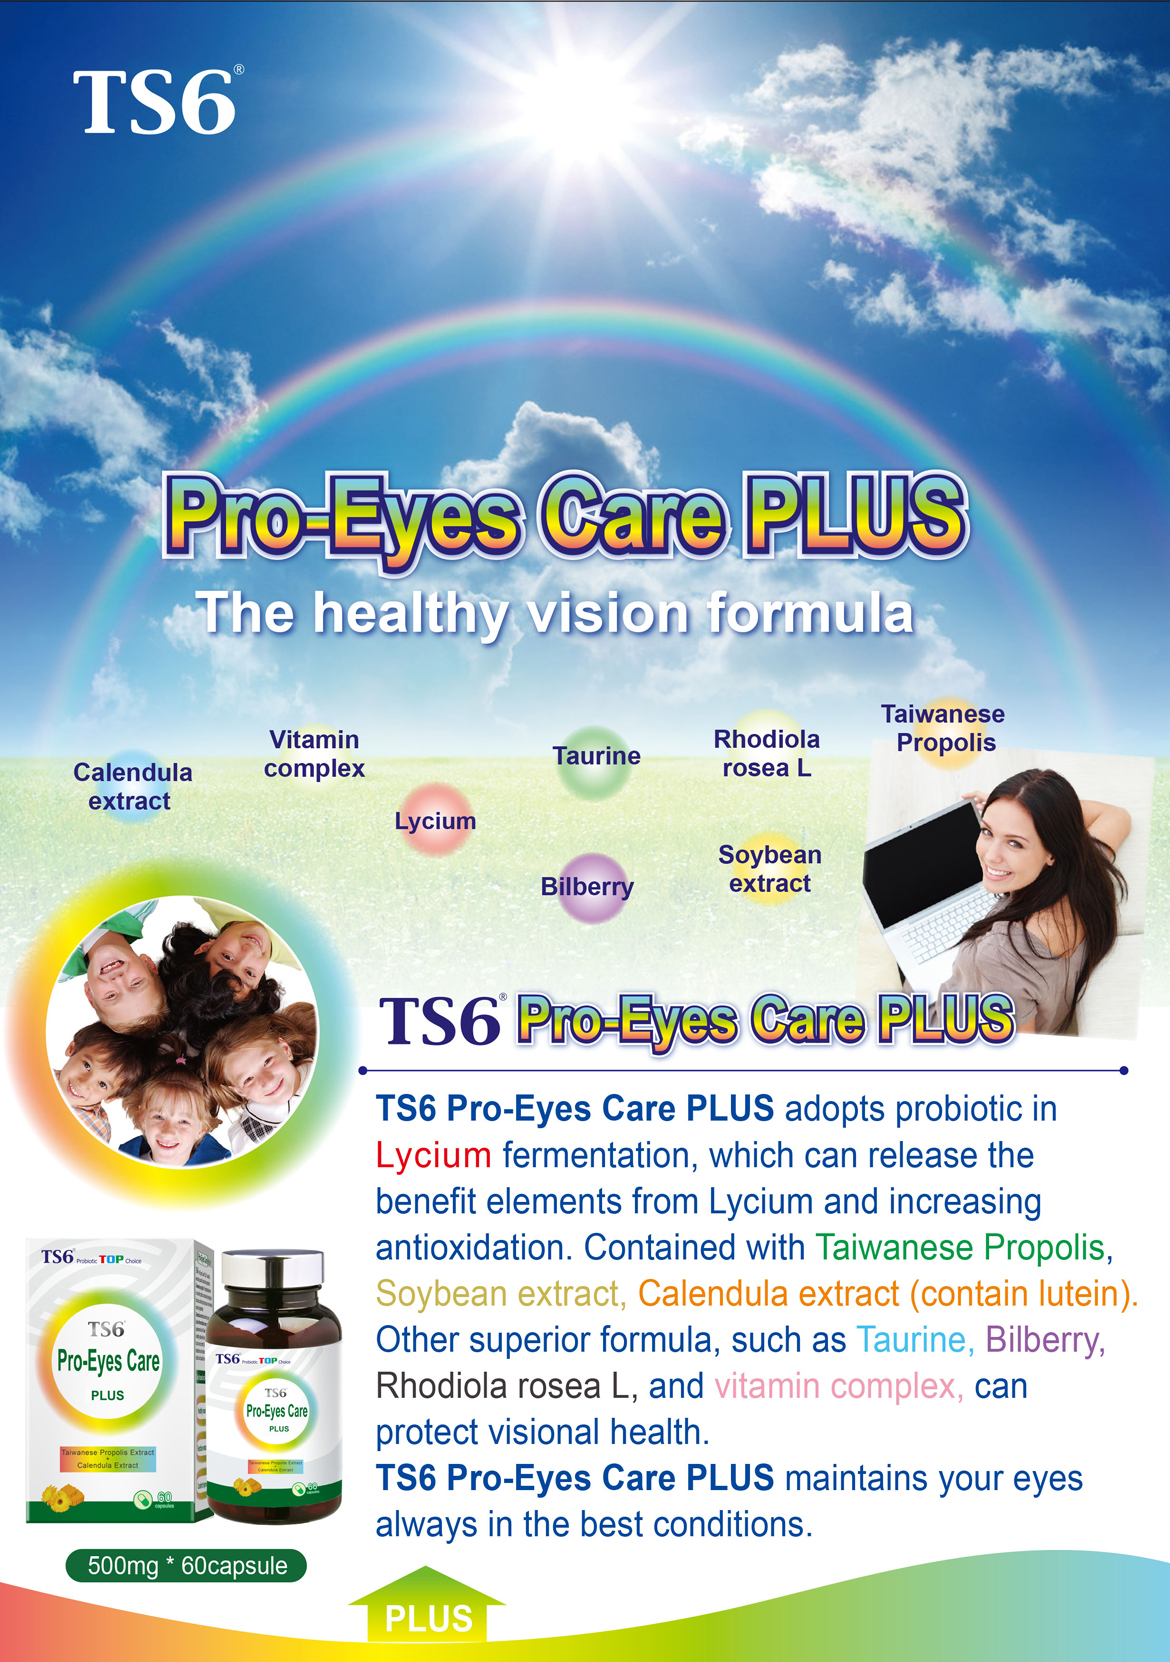 Pro-Eyes Care PLUS